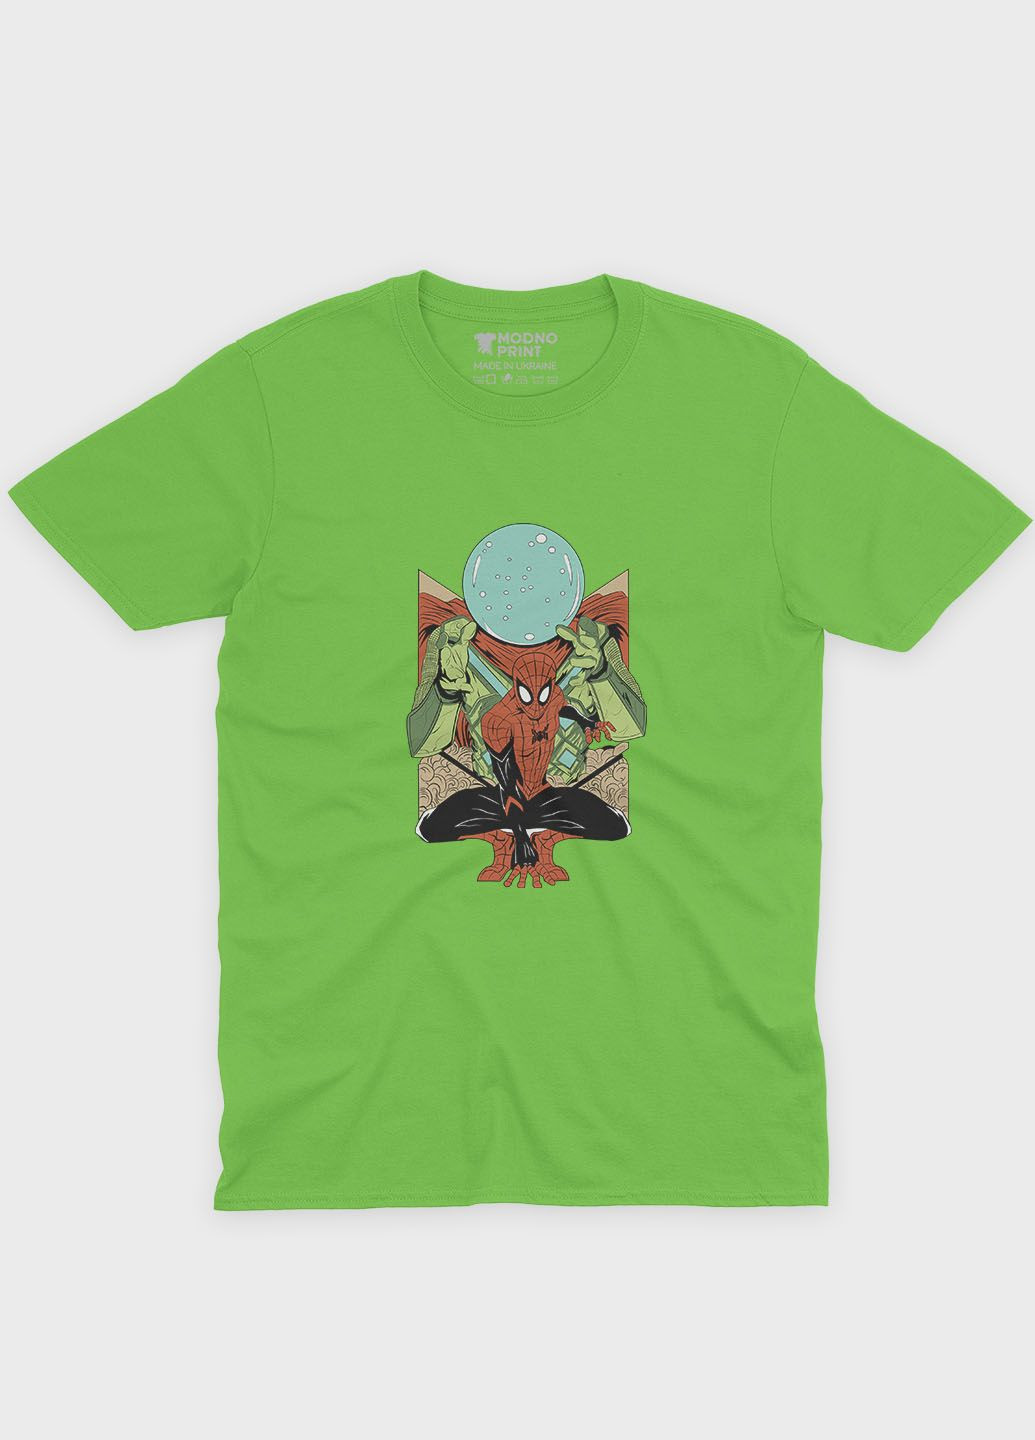 Салатова демісезонна футболка для хлопчика з принтом супергероя - людина-павук (ts001-1-kiw-006-014-020-b) Modno